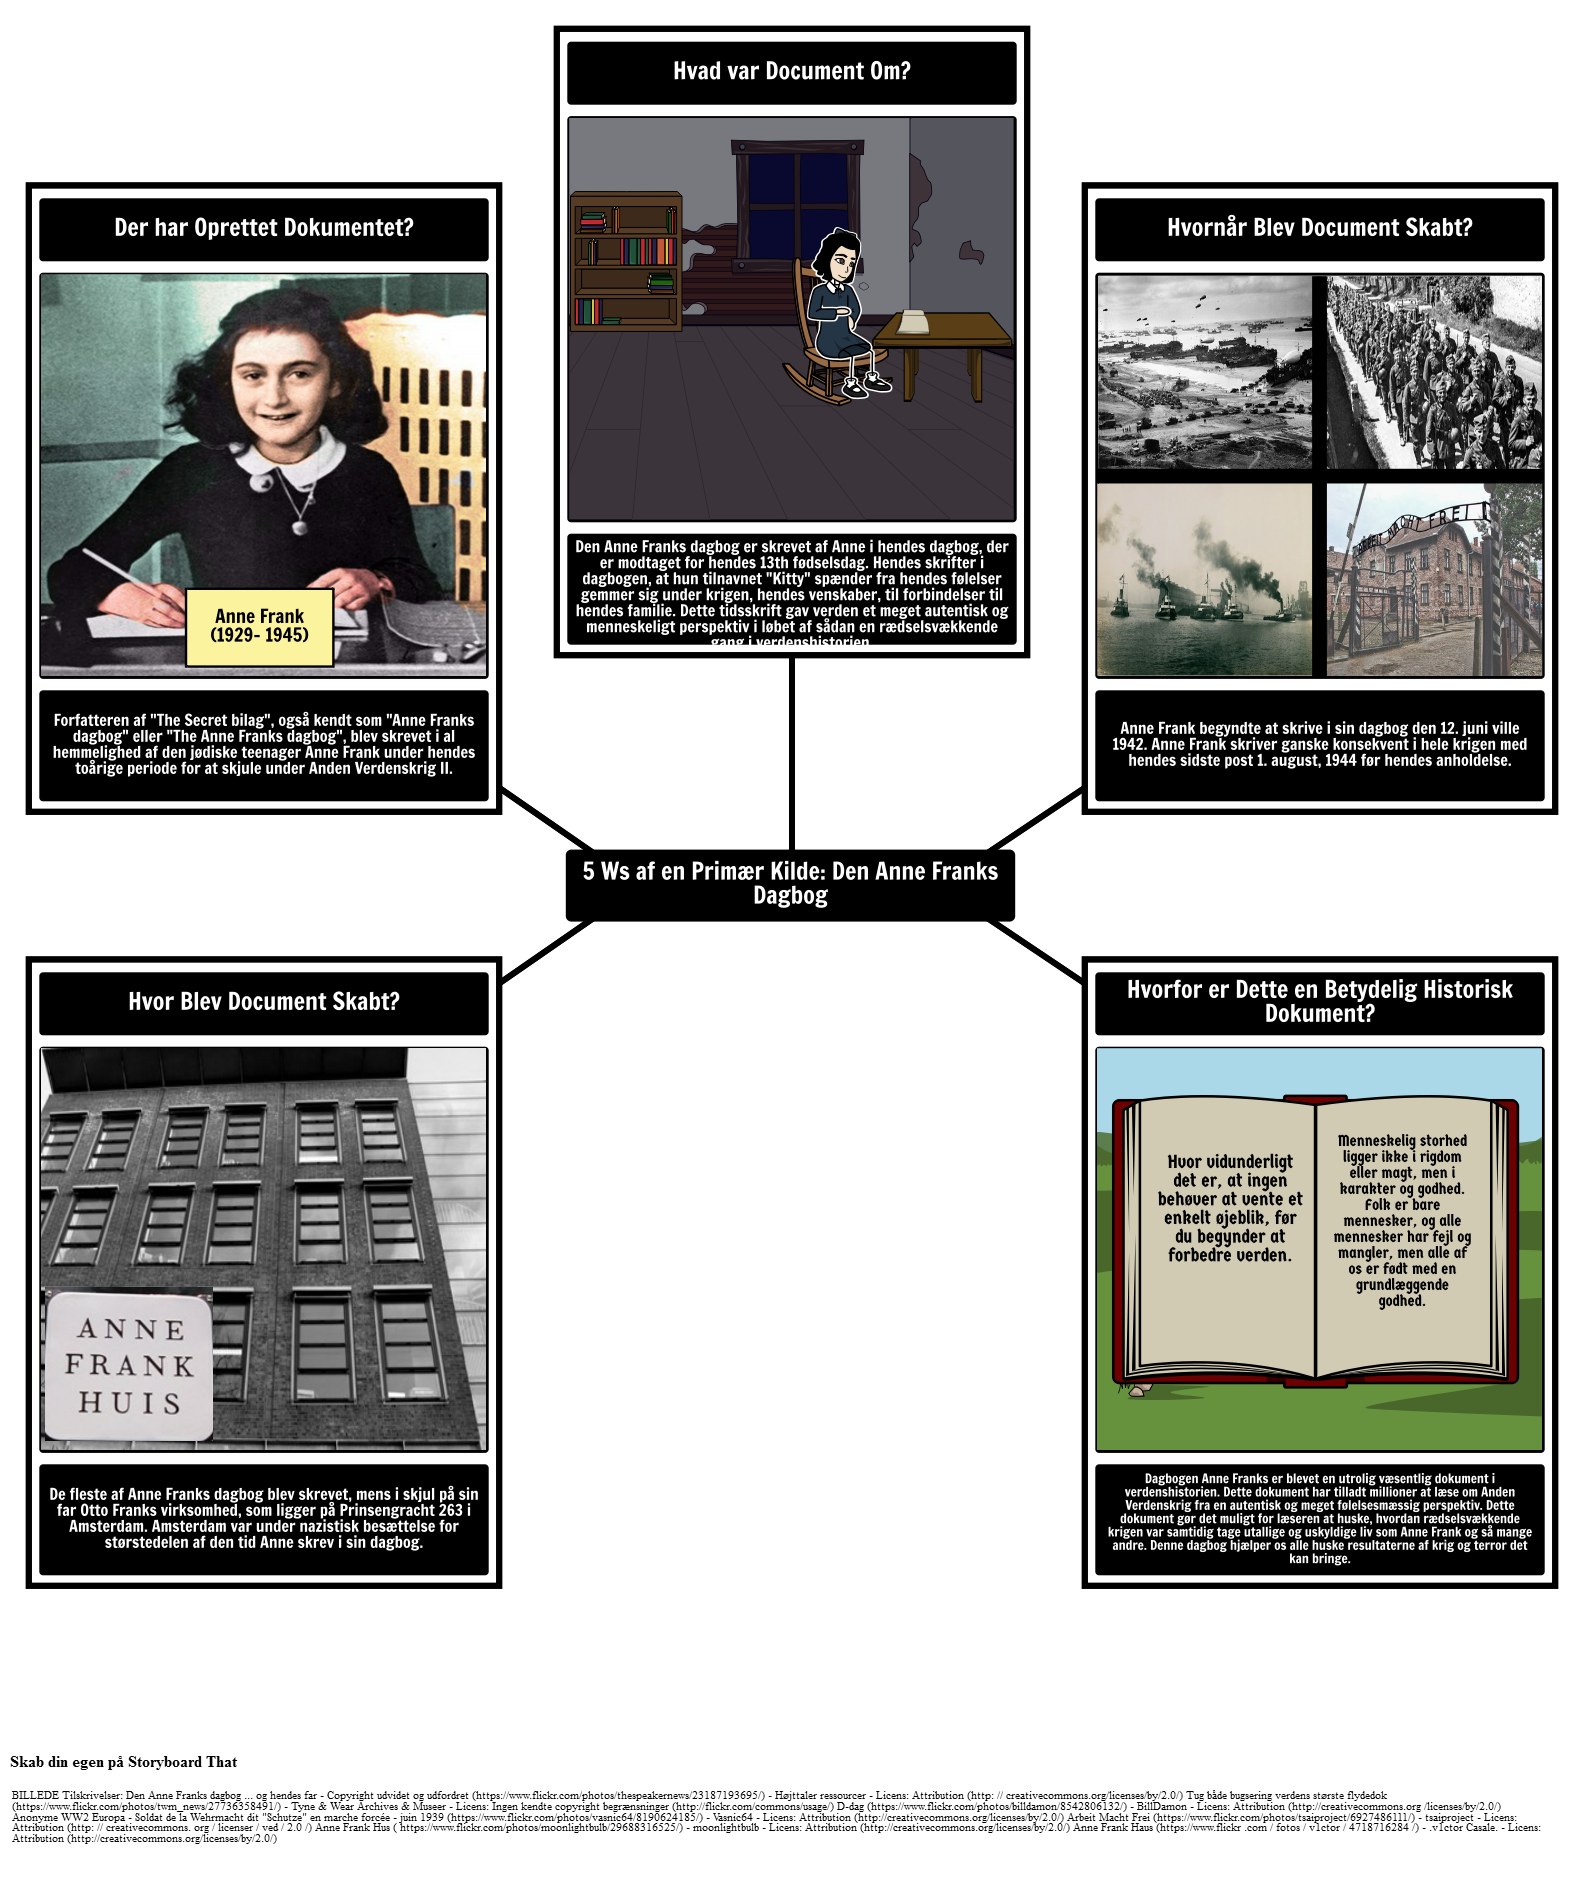 Primær Kilde 5Ws: Den Anne Franks dagbog